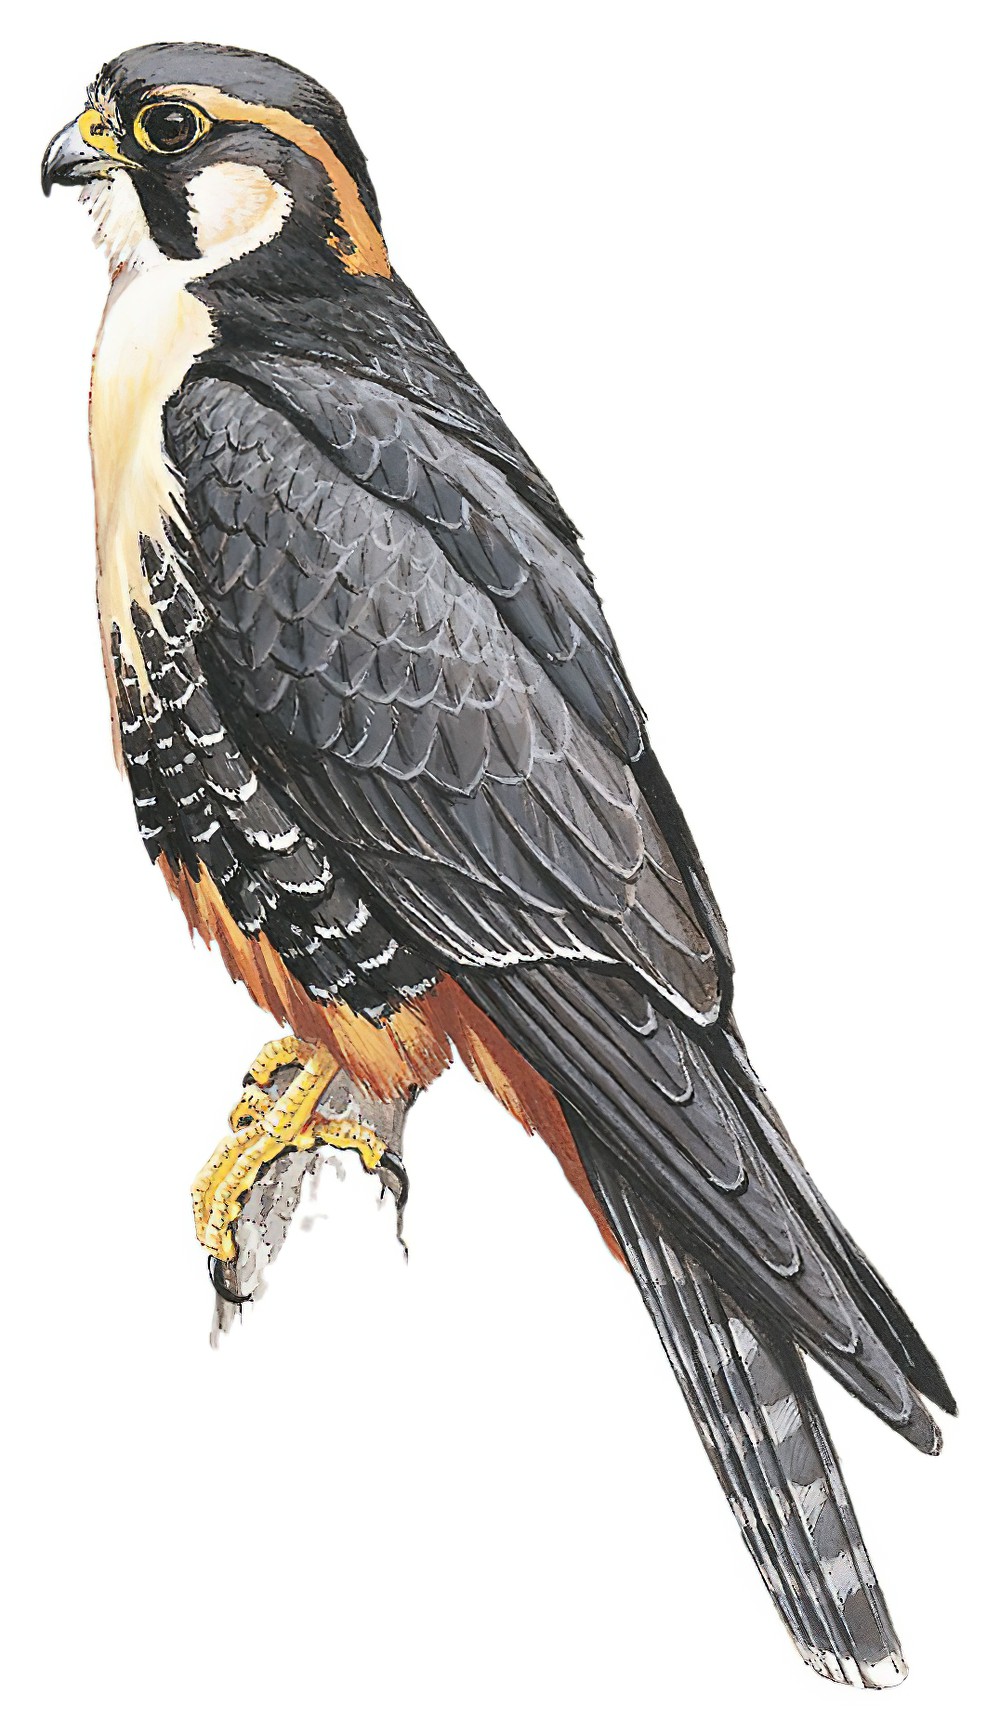 Aplomado Falcon / Falco femoralis